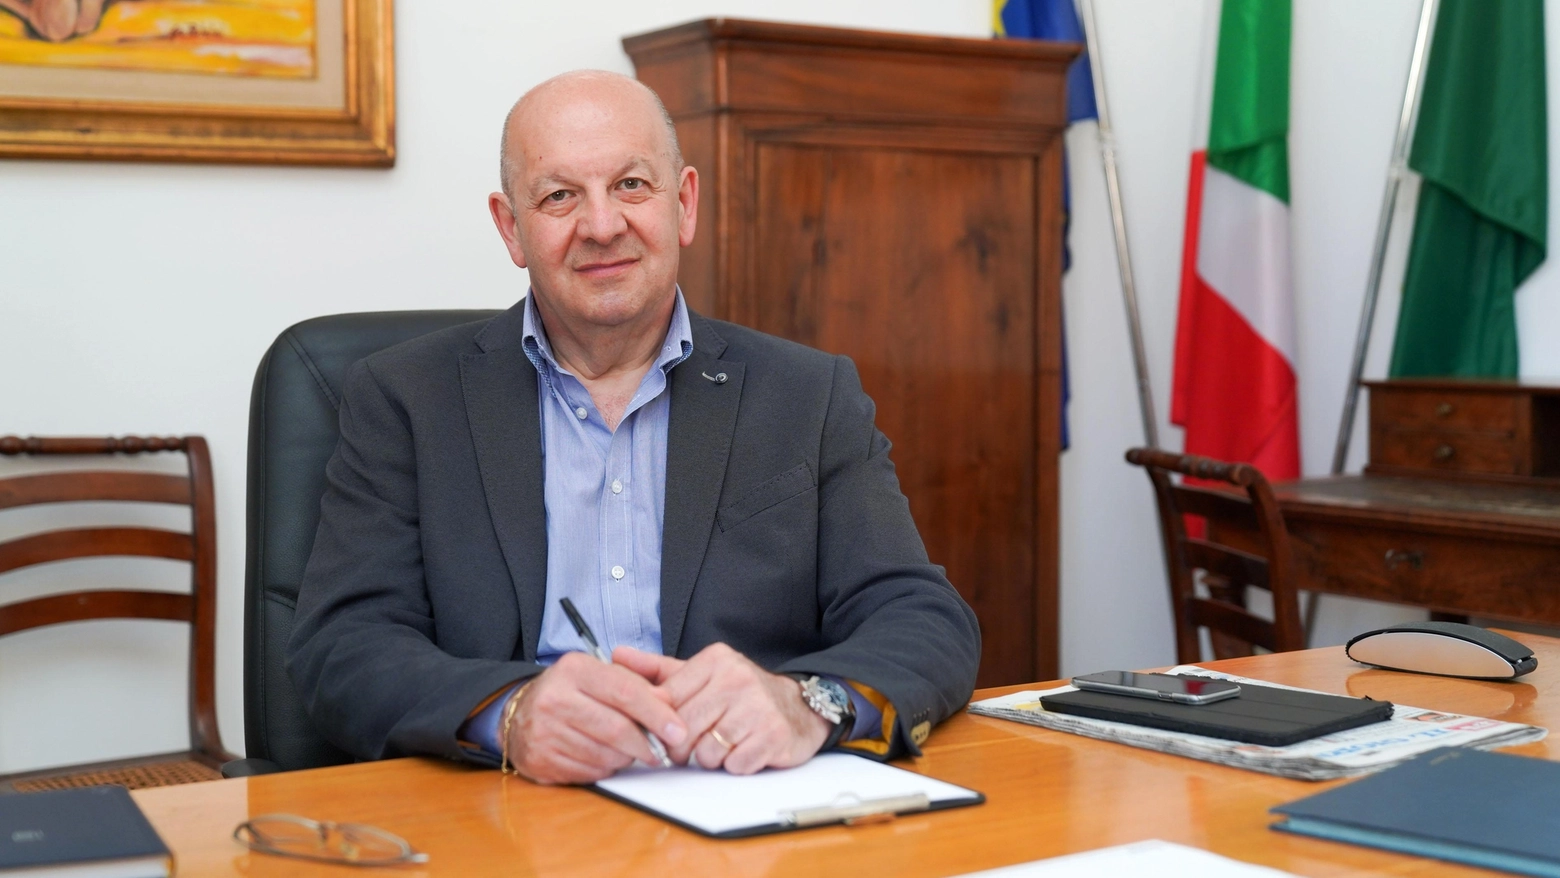 Il sindaco di Paderno Dugnano, Ezio Casati, nel suo ufficio